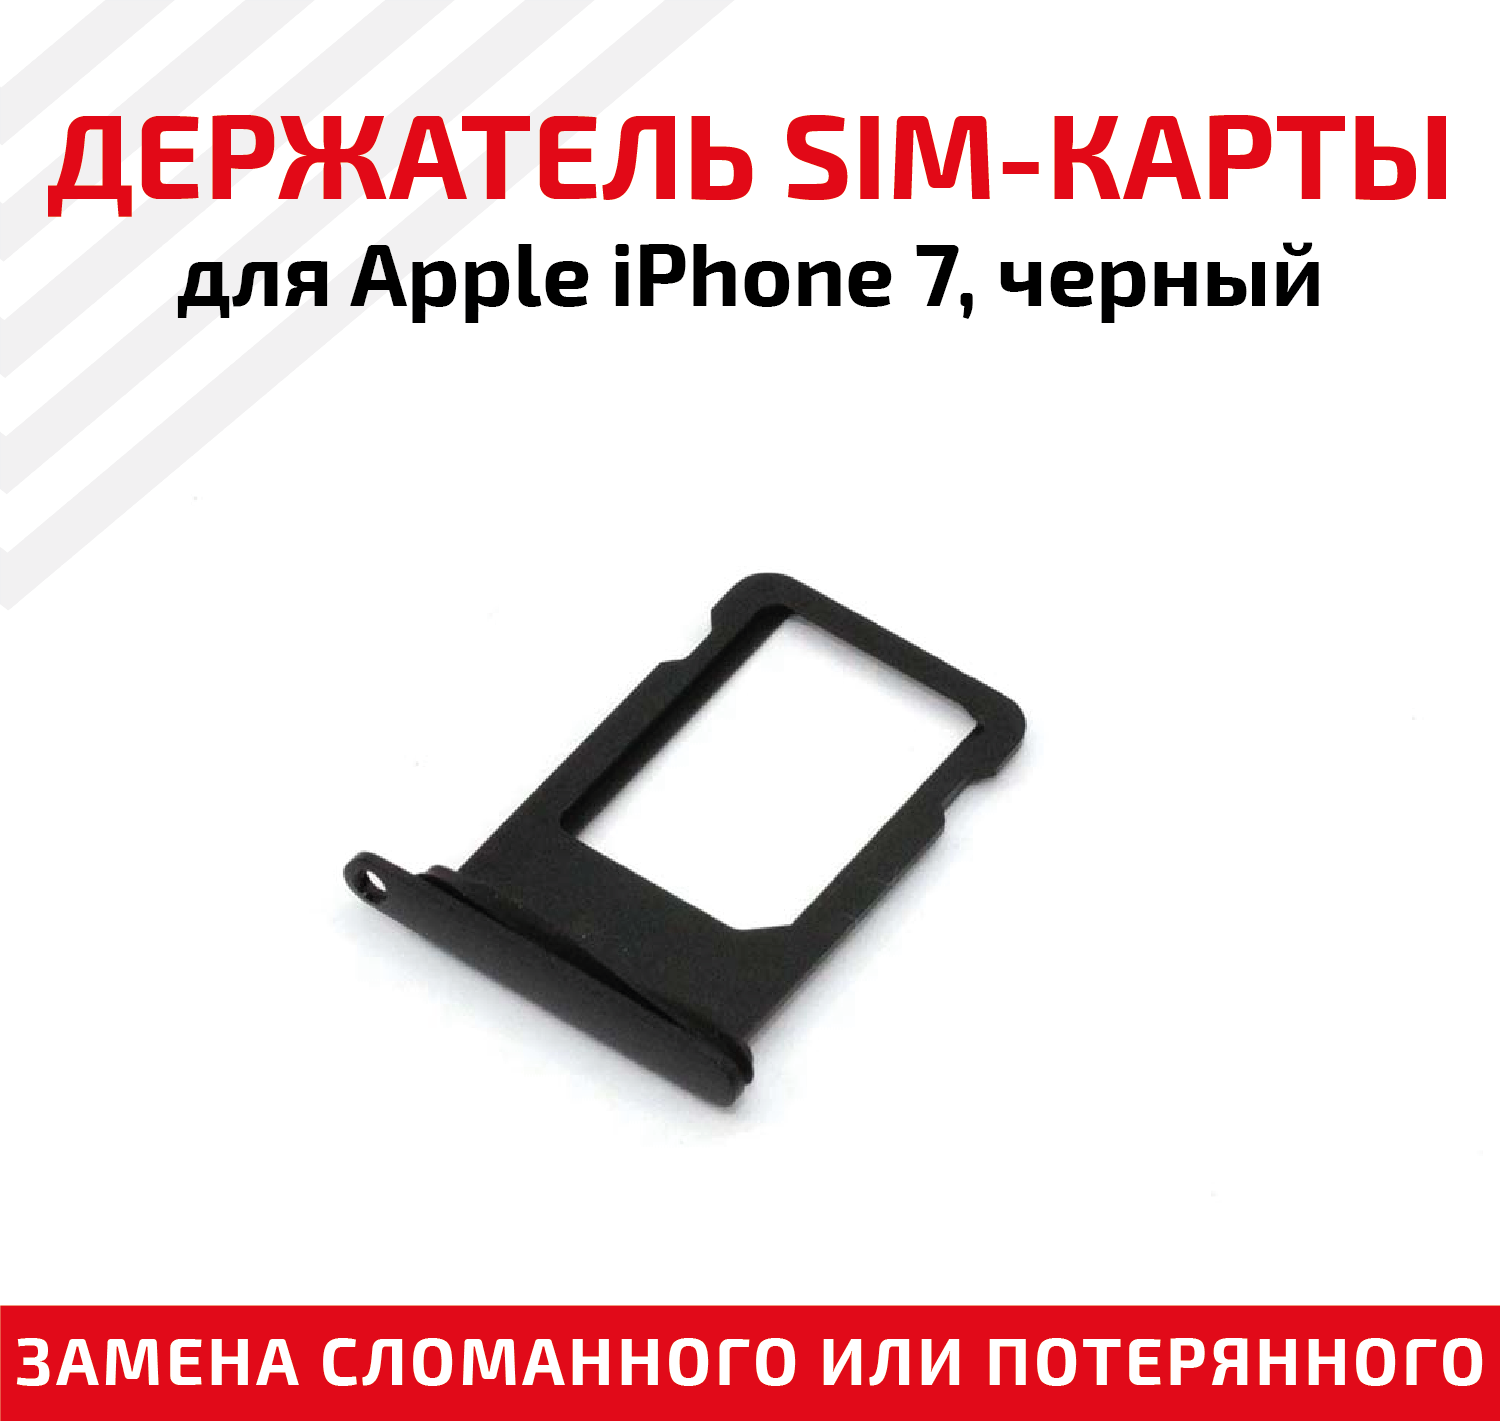 Лоток (держатель, контейнер, слот) SIM-карты для мобильного телефона (смартфона) Apple iPhone 7, черный